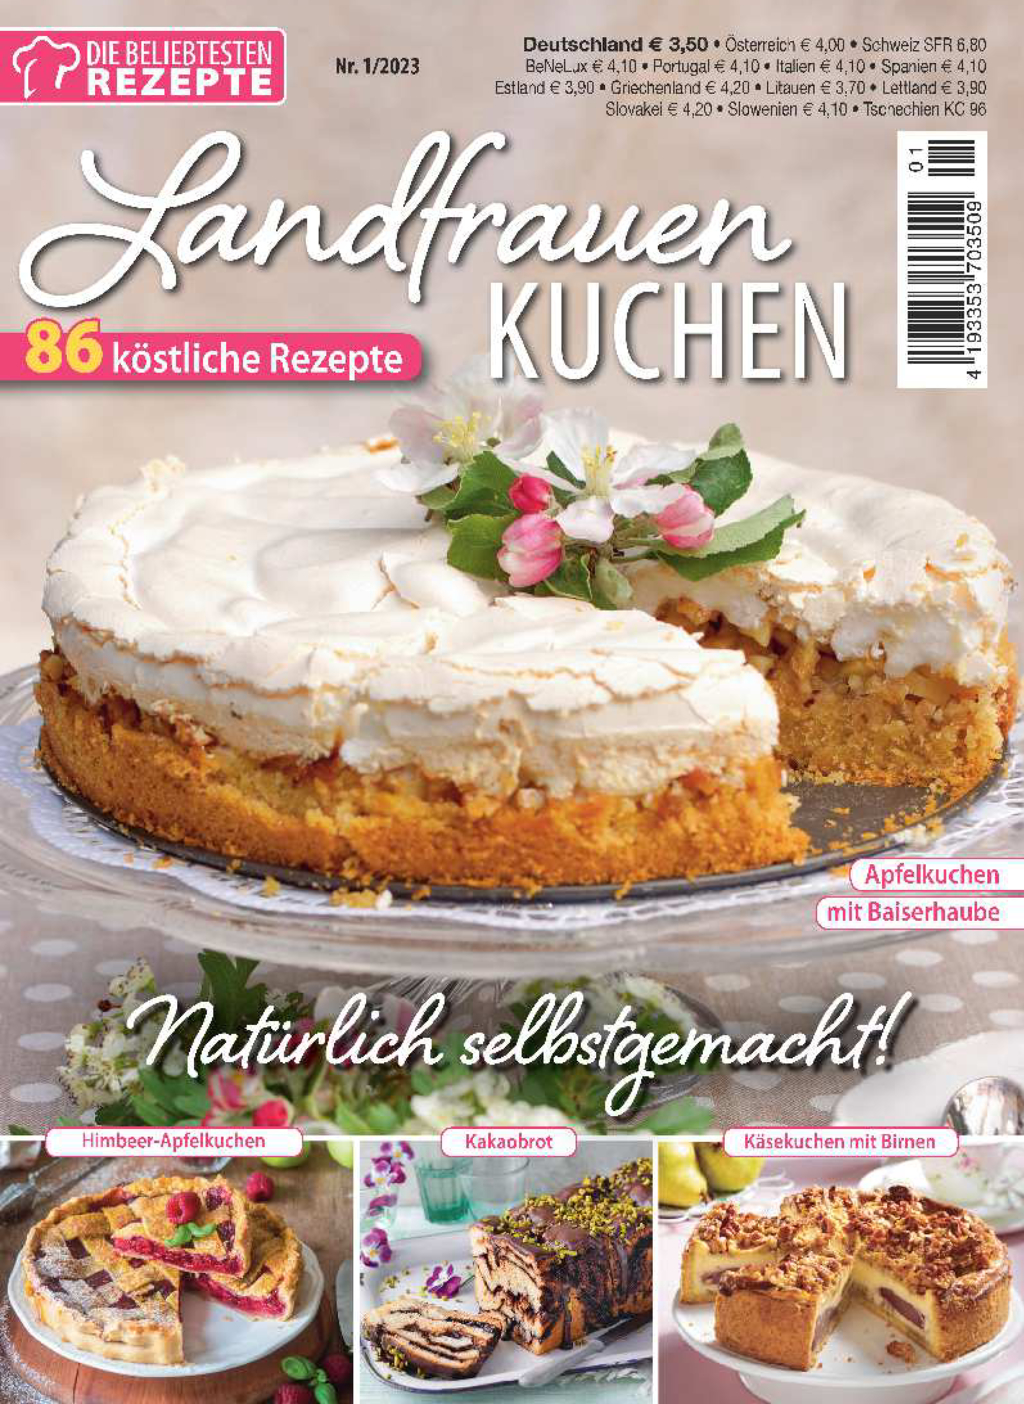 Die beliebtesten Rezepte 1/2023 - Landfrauen Kuchen